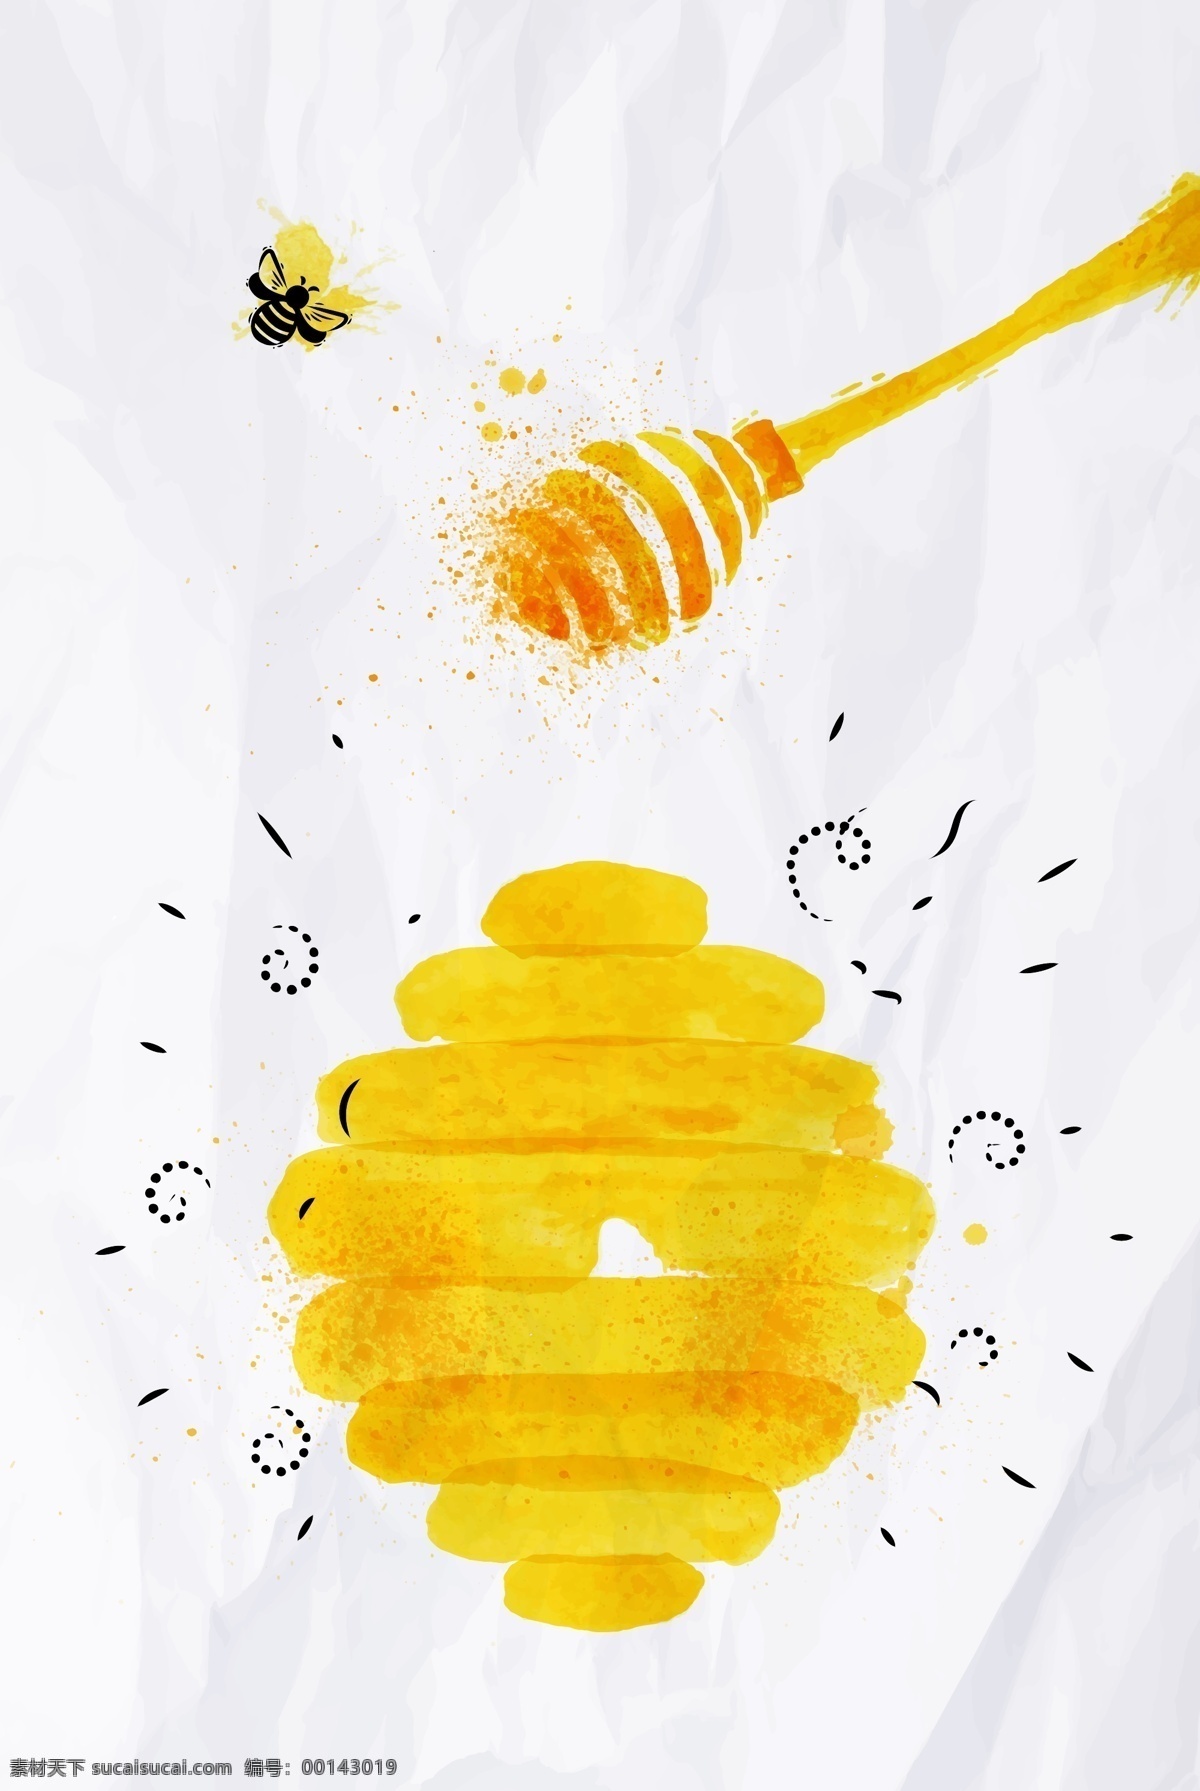 背景 蜂蜜 蜂王浆 光泽 海报 金黄色 蜜蜂 食品 矢量 质感 手绘 美食 滋补 滋补食品